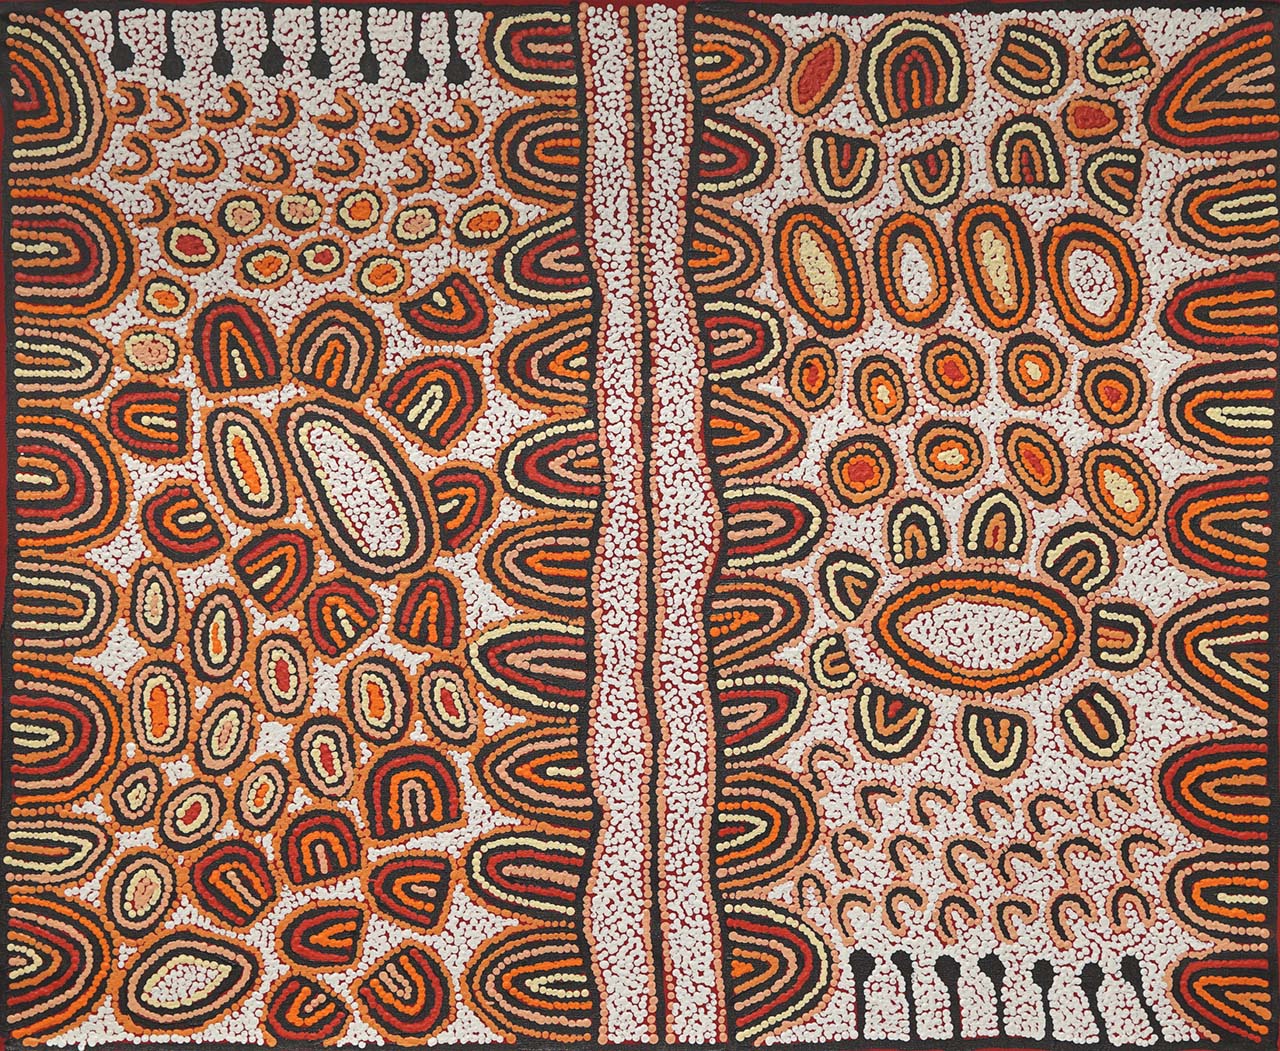 Aboriginal Art Kiwiet Art